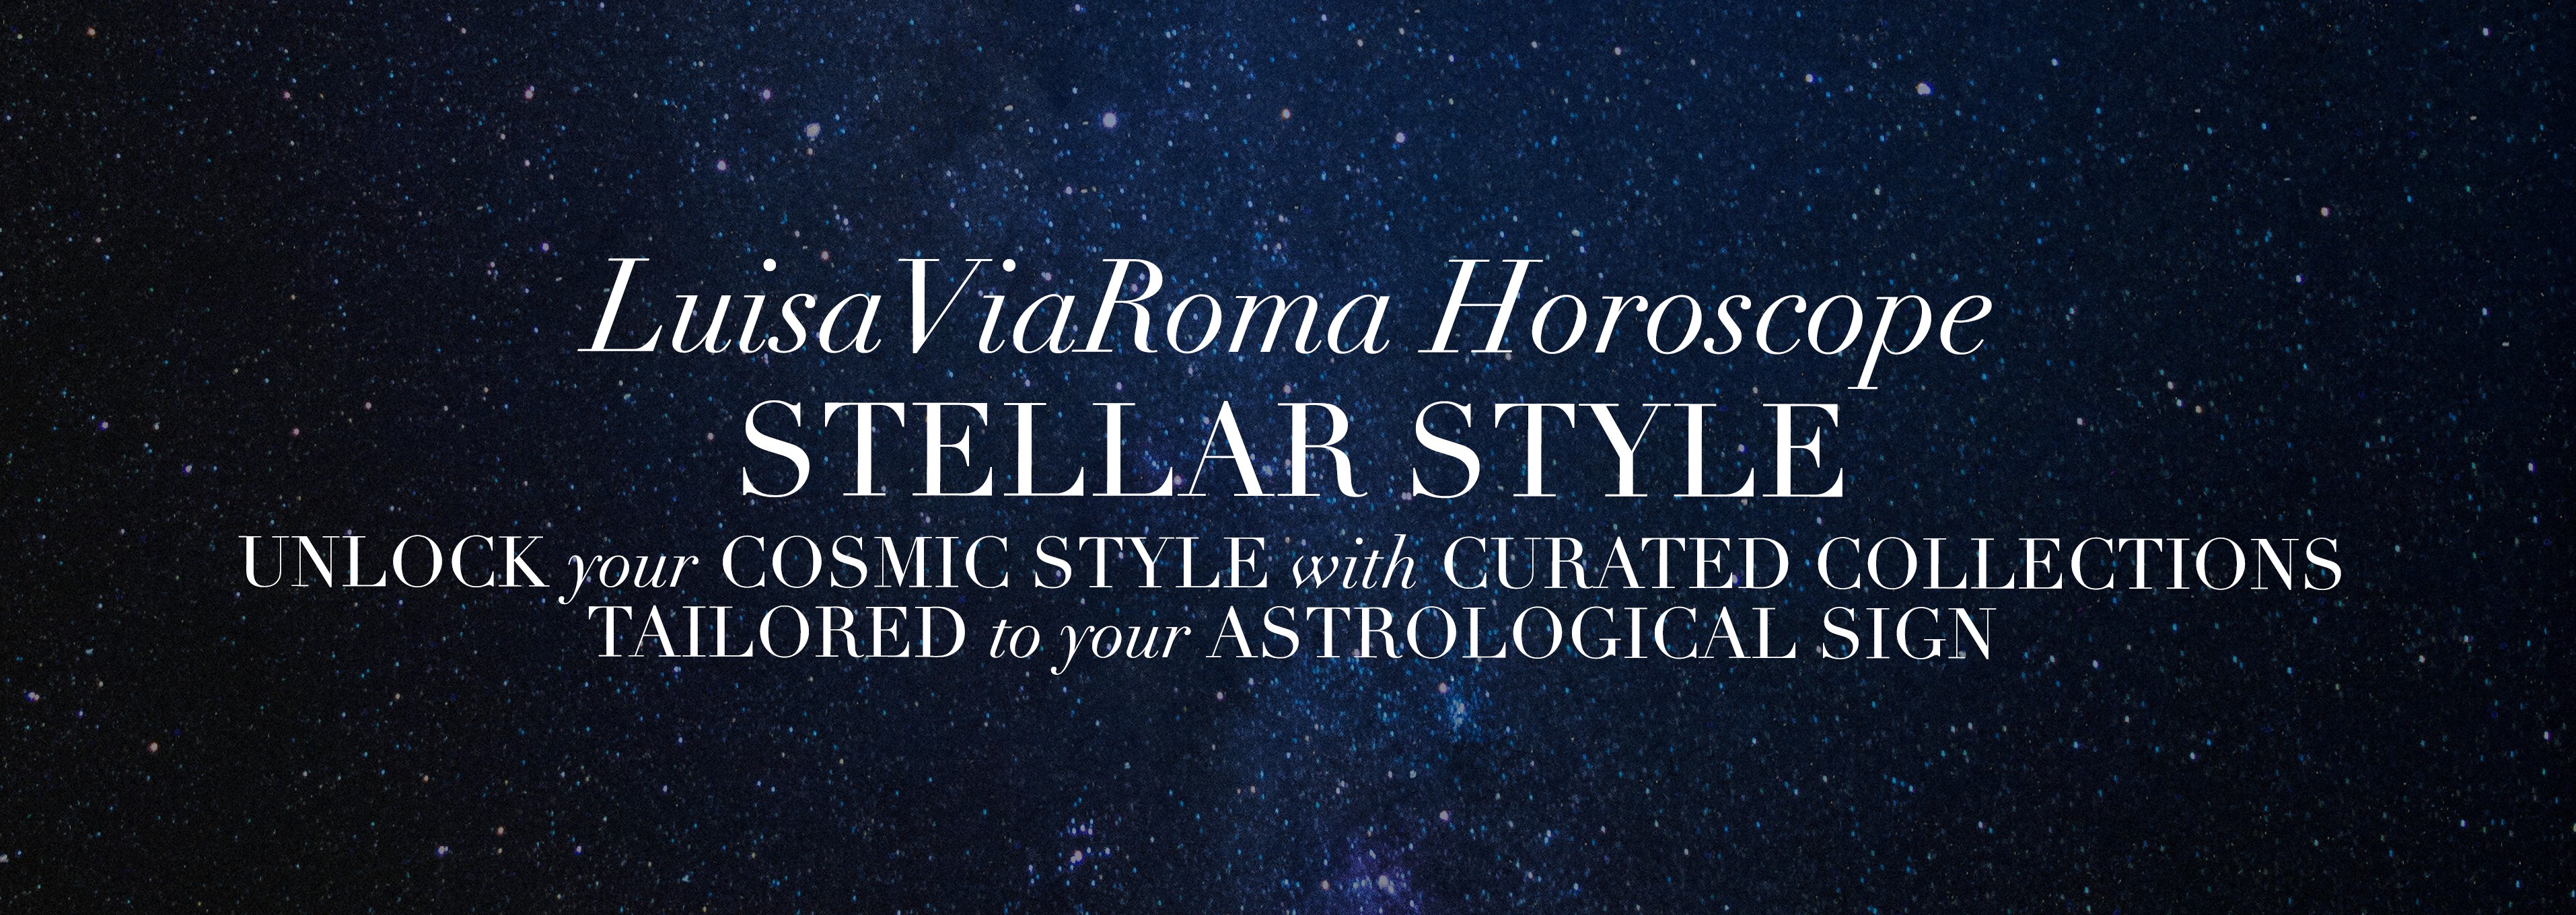 LuisaViaRoma Horoscope: Stellar Style